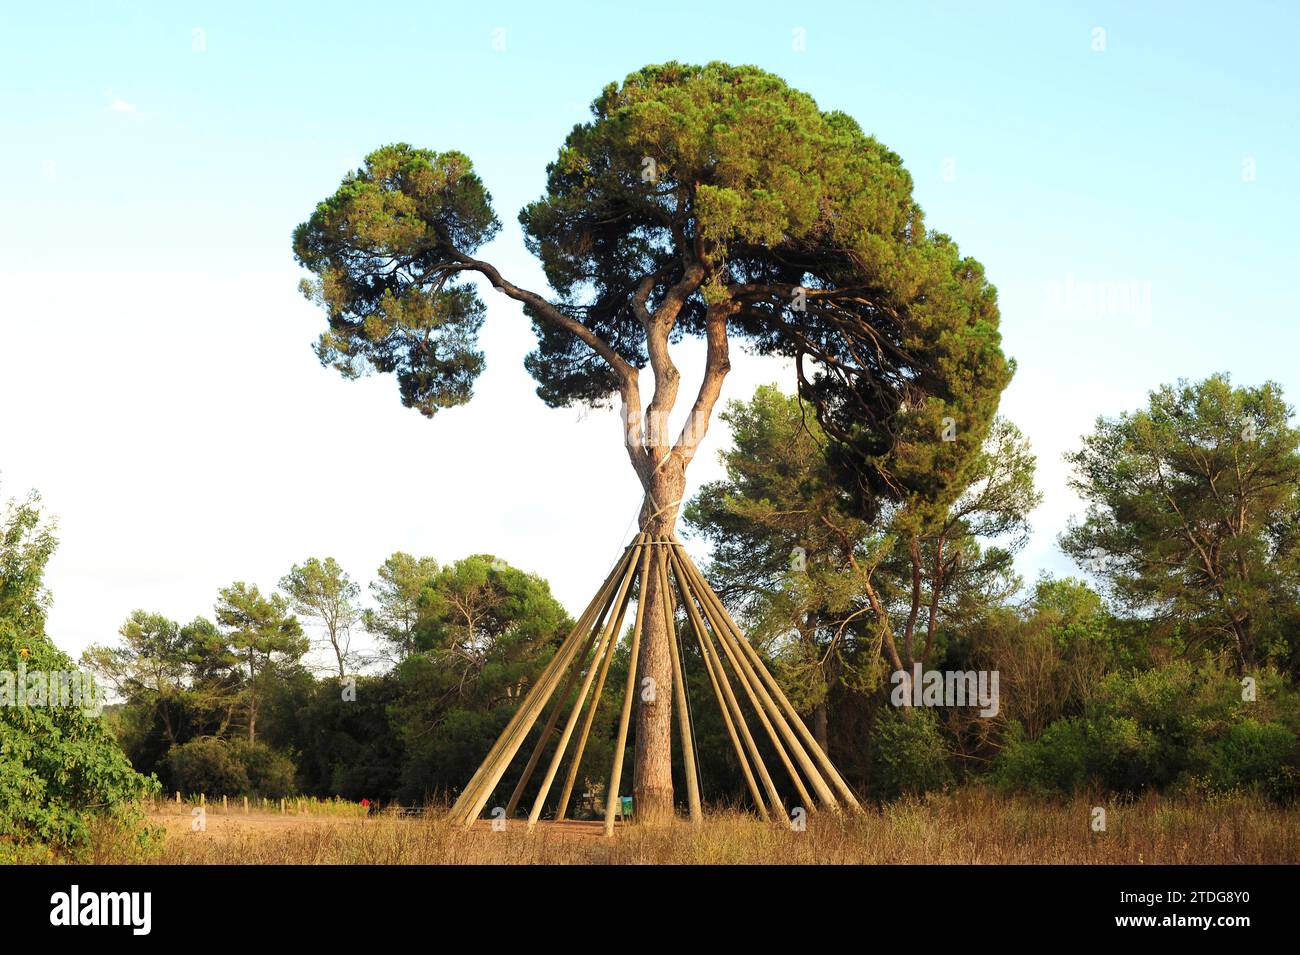 Le pin de pierre (Pinus pinea) est un conifère originaire du sud de l'Europe. Ses pignons de pin sont comestibles. Est un arbre singulier nommé Pi d'en Xandri. Cette photo Banque D'Images